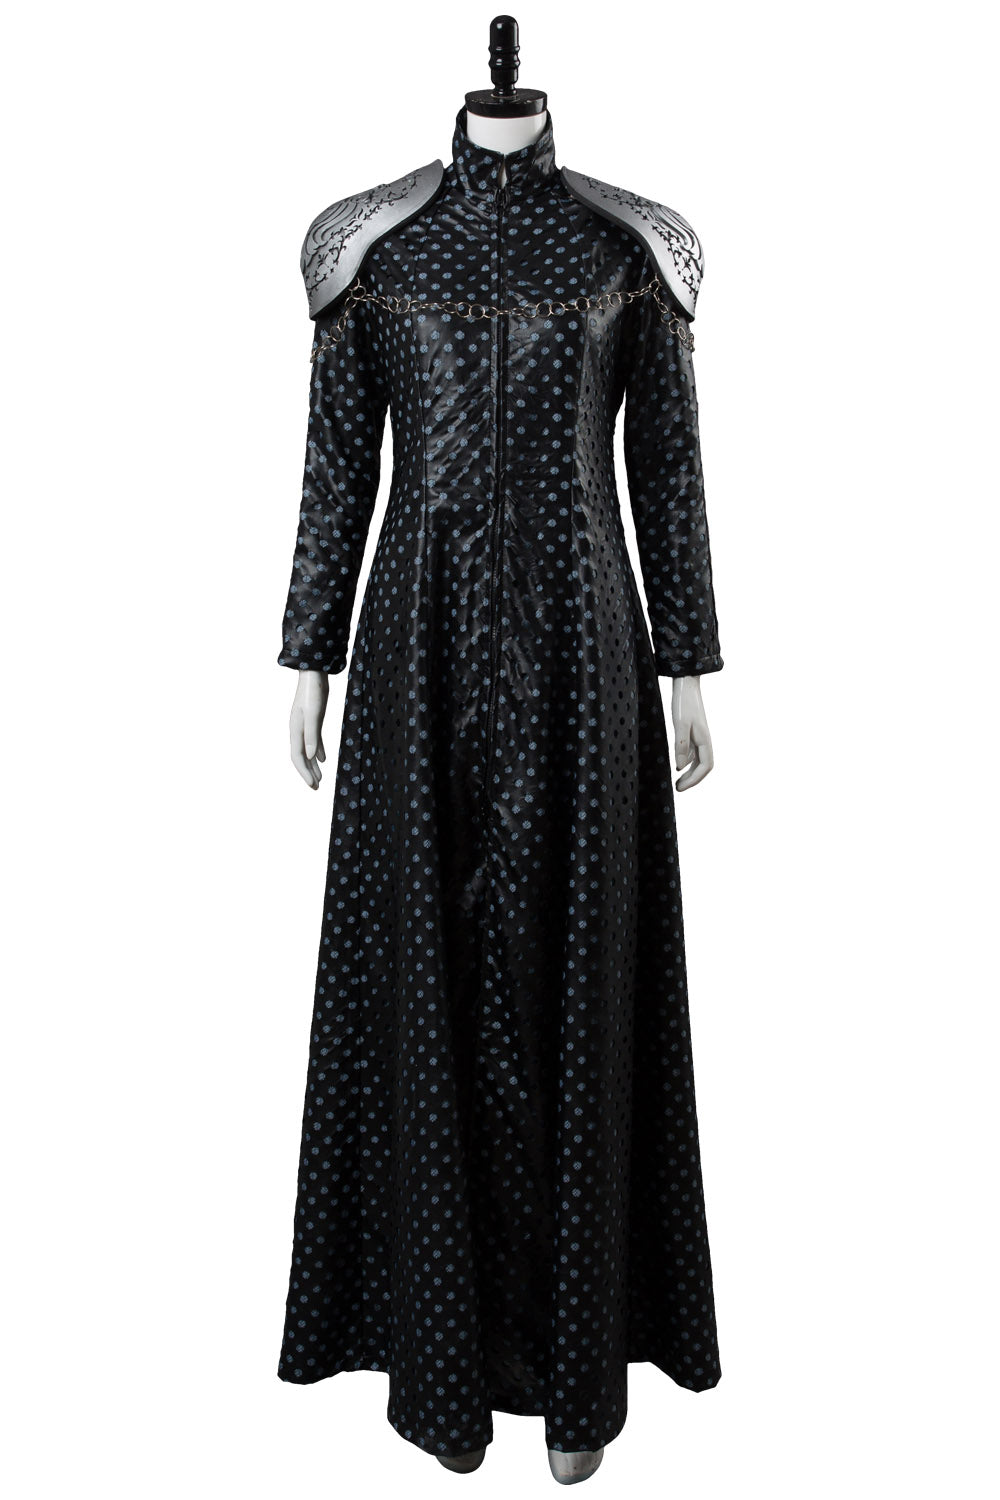 Game of Thrones GOT Cersei Lannister Cersei Llennister Kleid Cosplay Kostüm